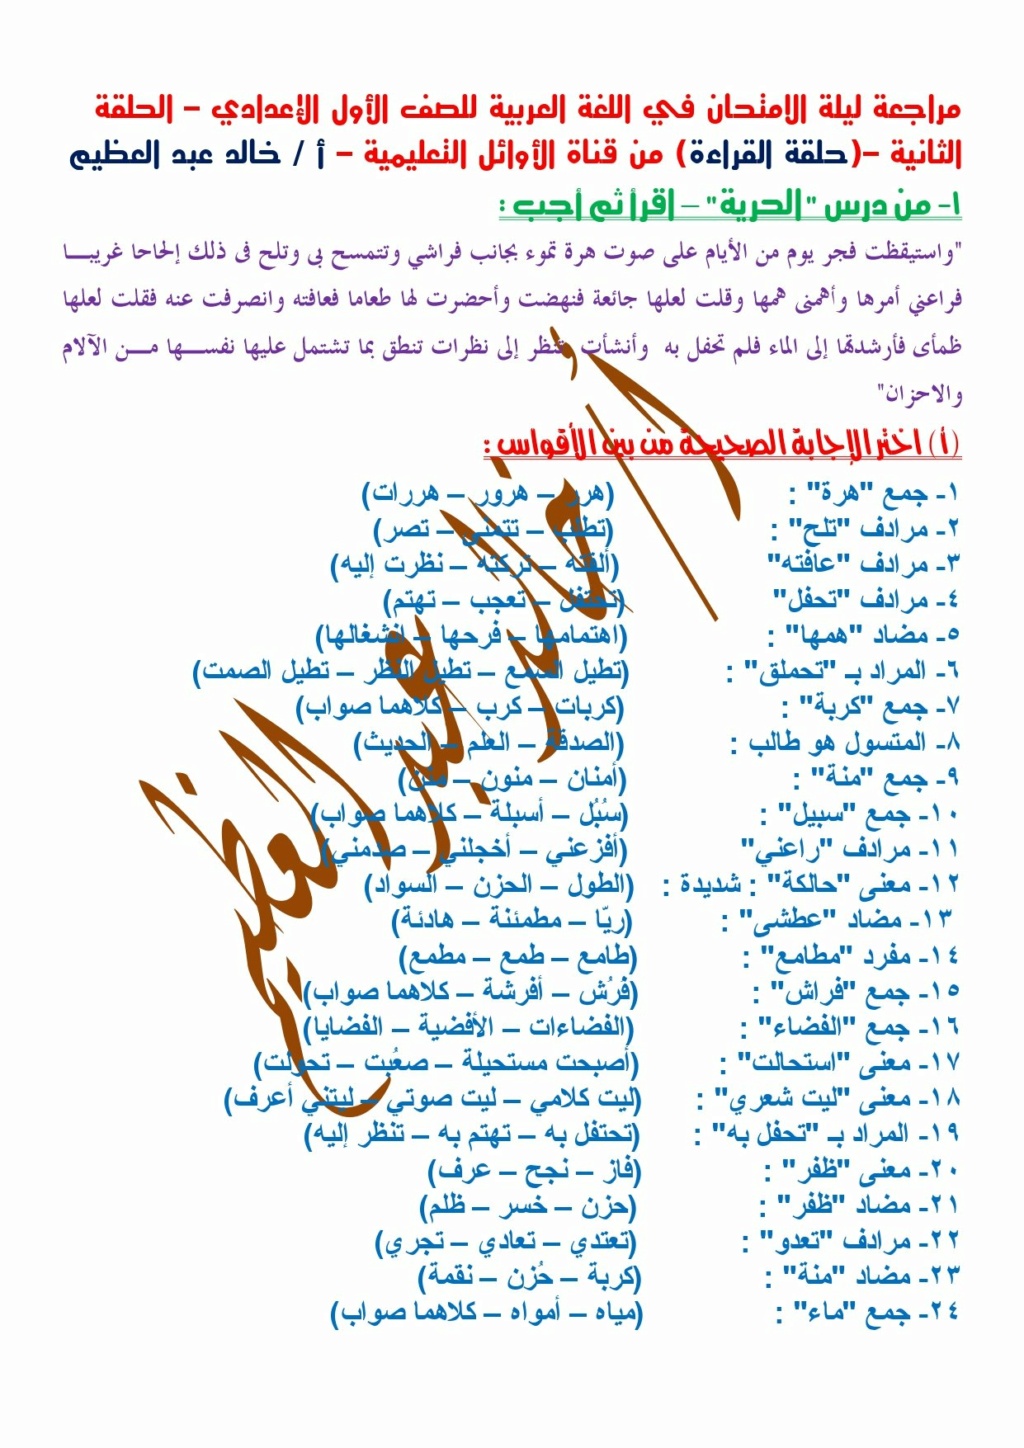 مراجعة القراءة ليلة الامتحان للصف الأول الإعدادي أ/ خالد عبد العظيم  1641